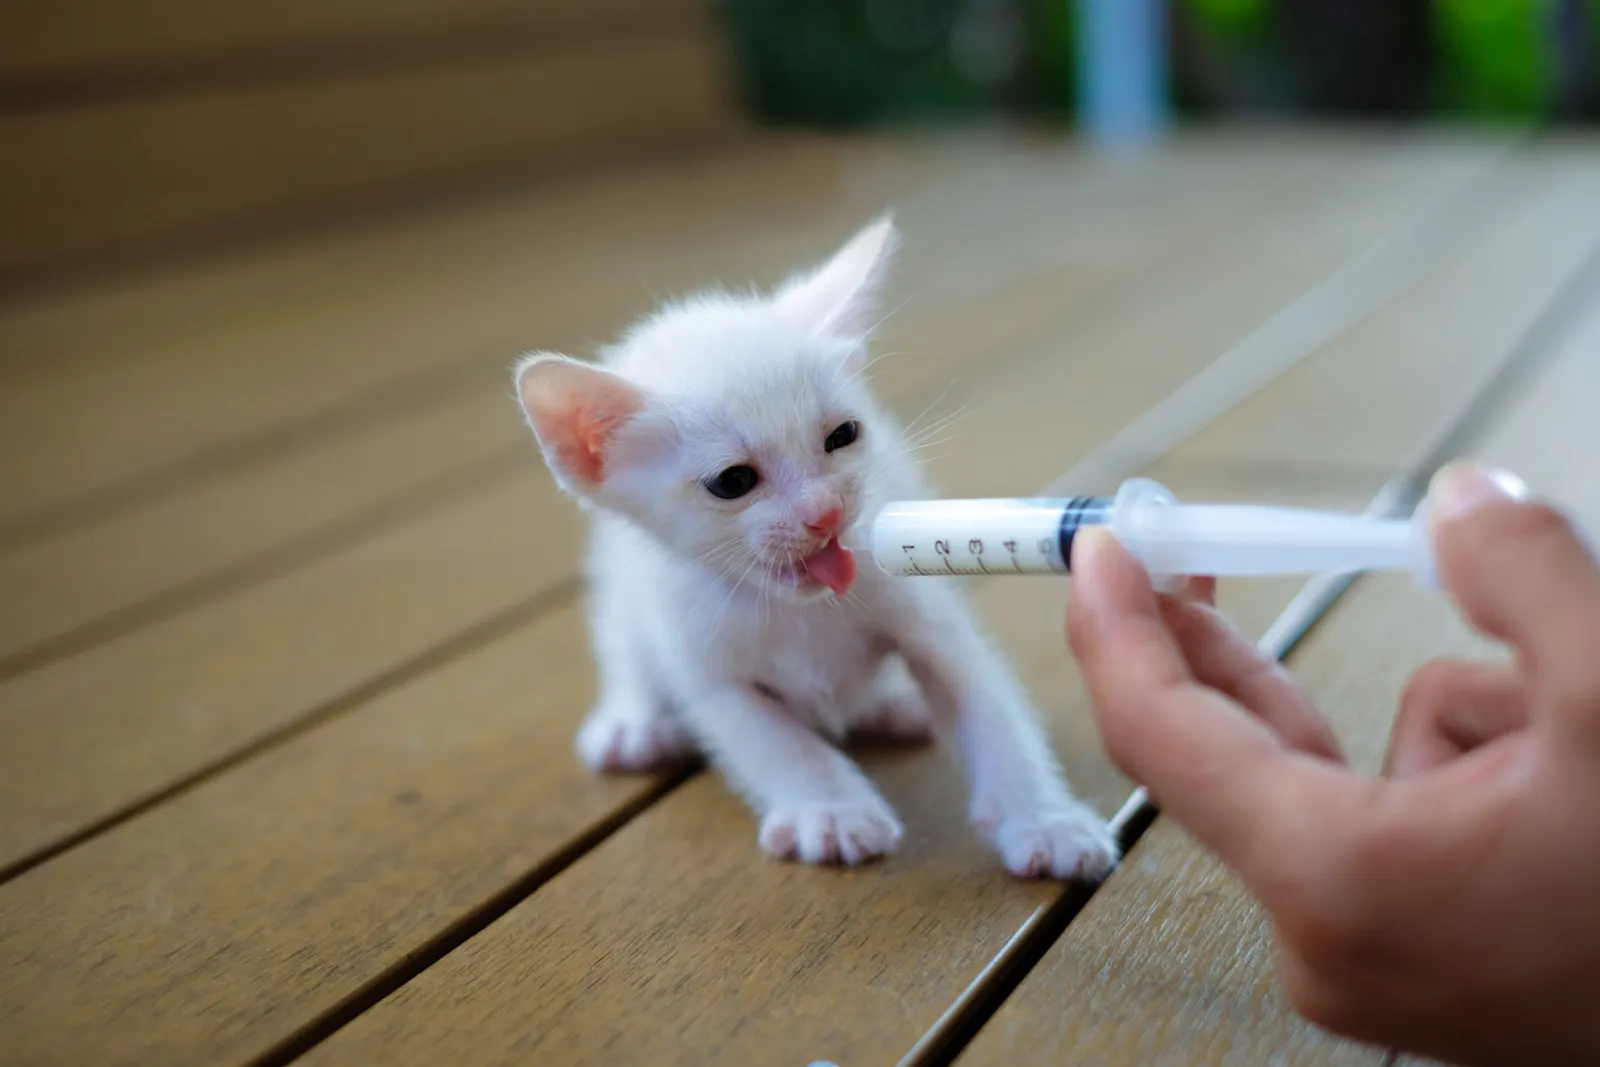 Met de hand voeden van een schattig verweesd baby wit kitten met melkvervanger in een spuit